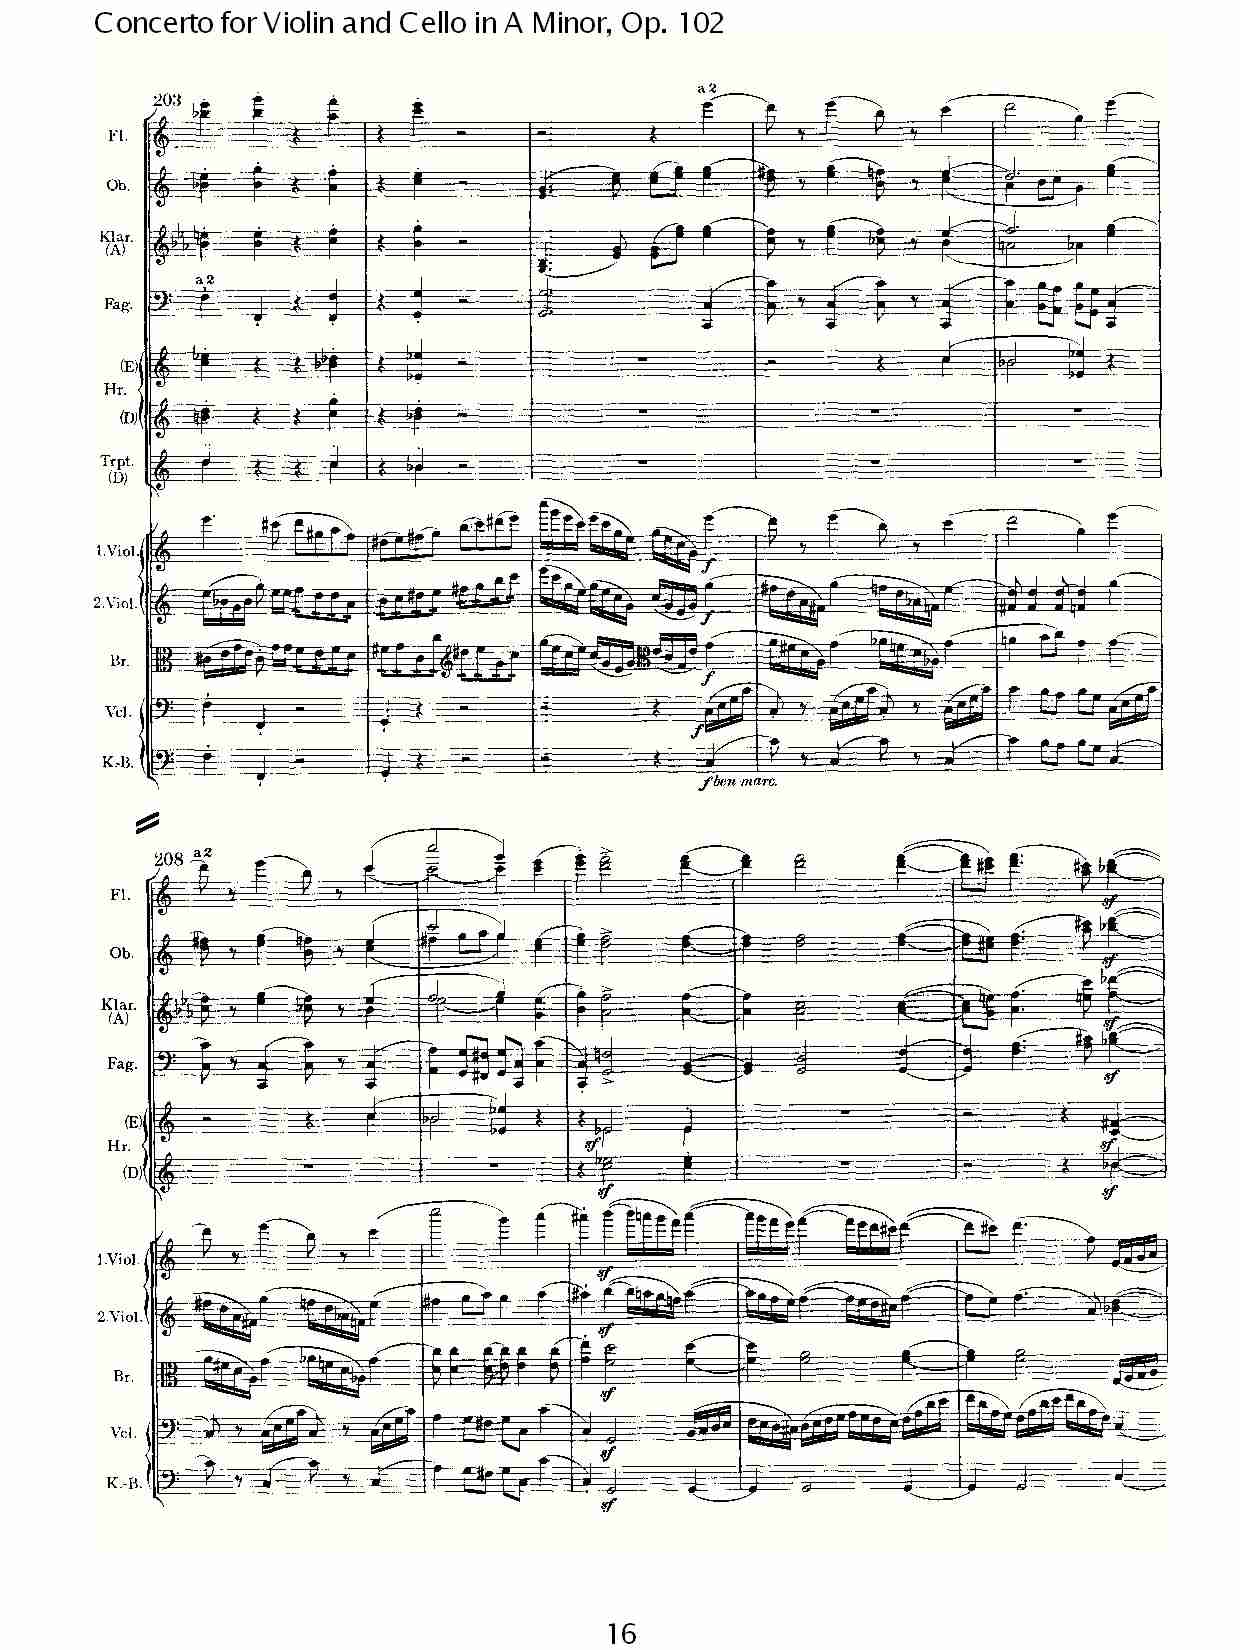 A小调小提琴与大提琴协奏曲, Op.102第一乐章（四）总谱（图1）